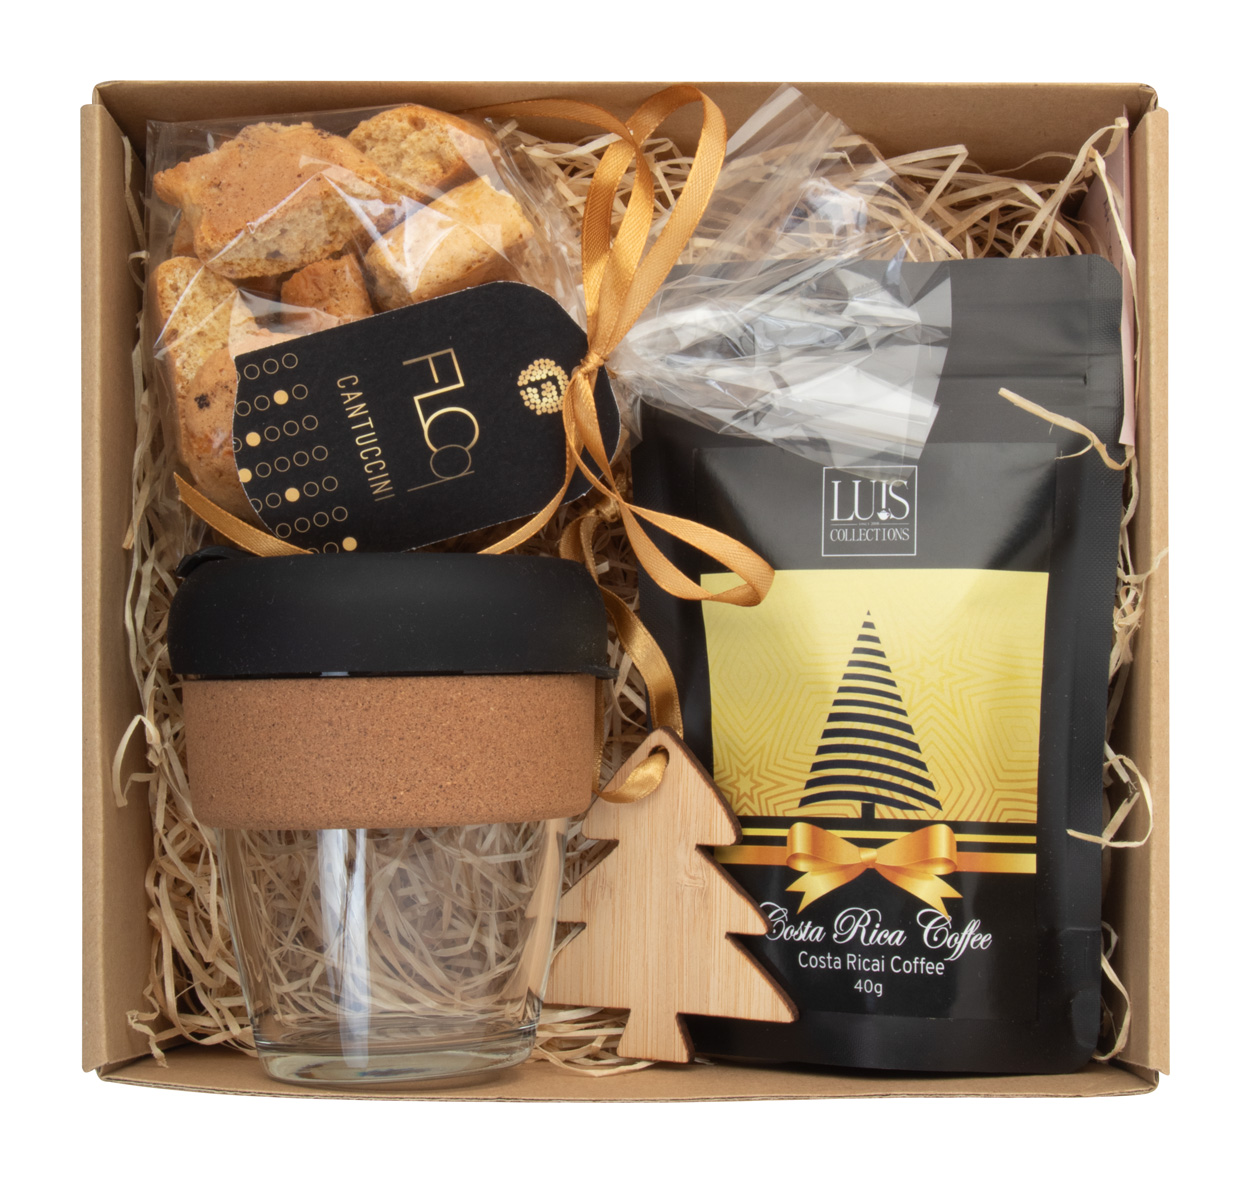 Orosi coffee gift set - beige